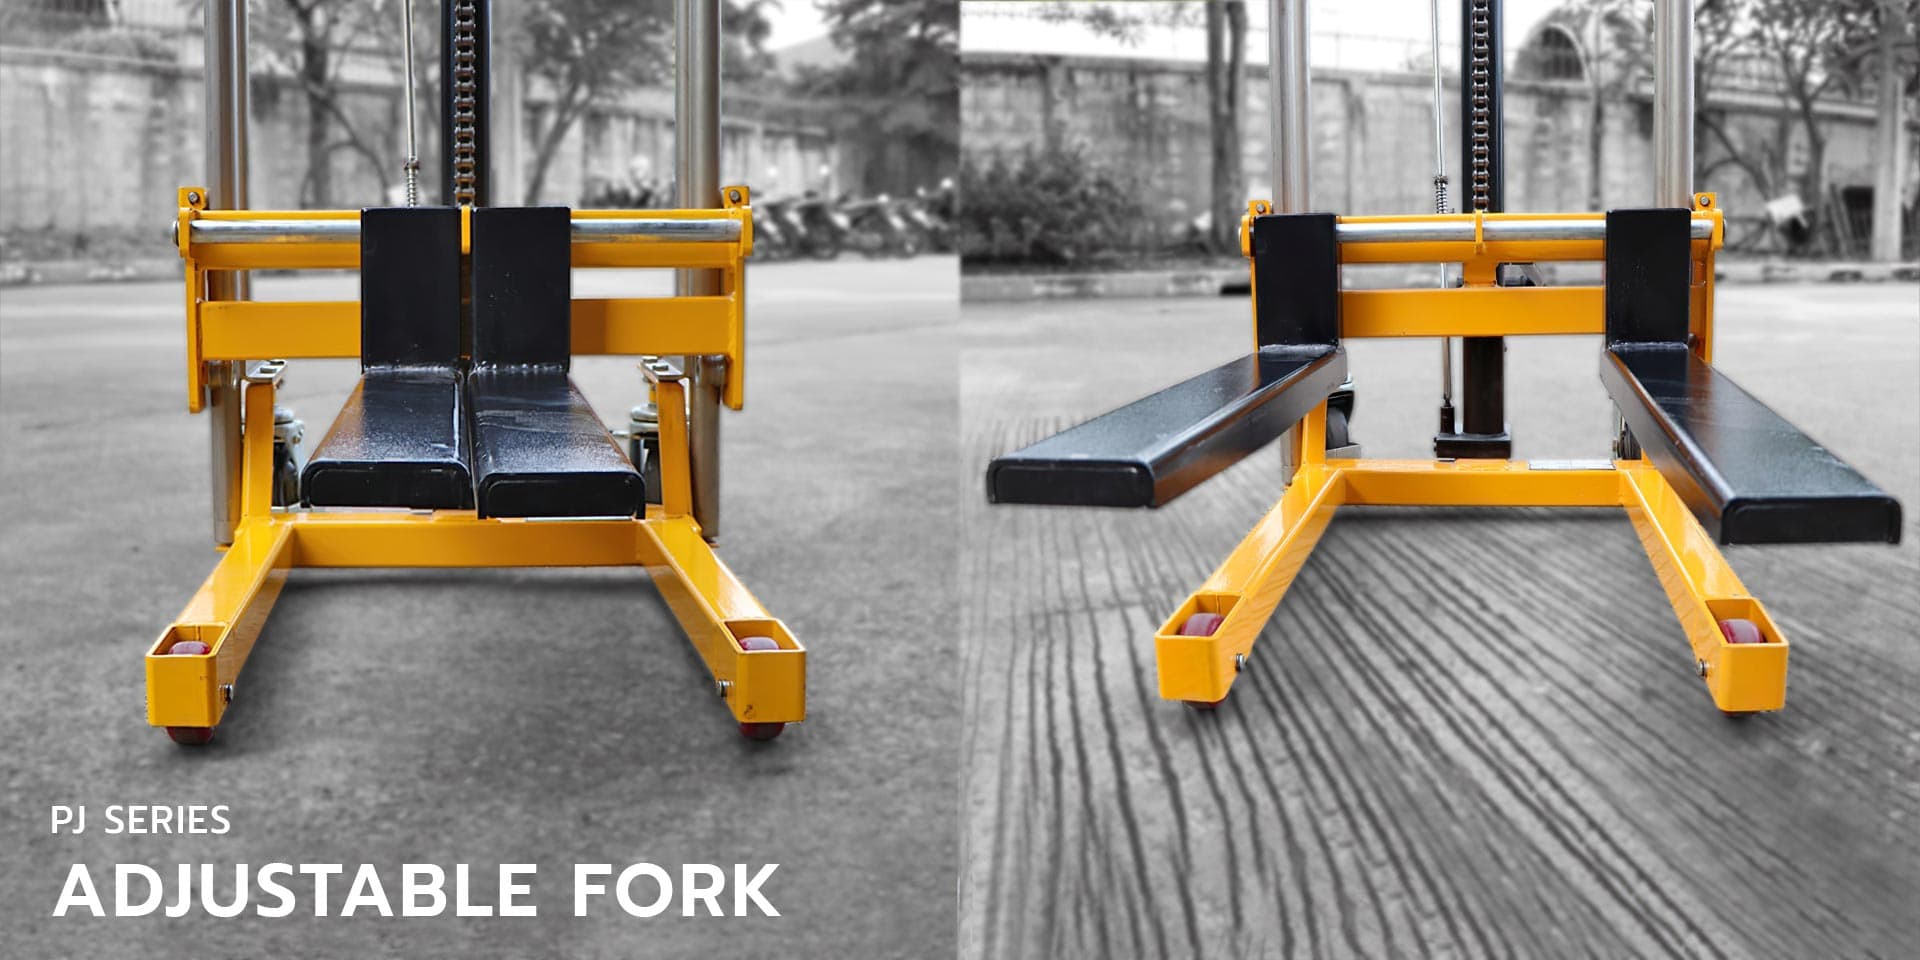 4. Fork type stacker adjustable fork pj series